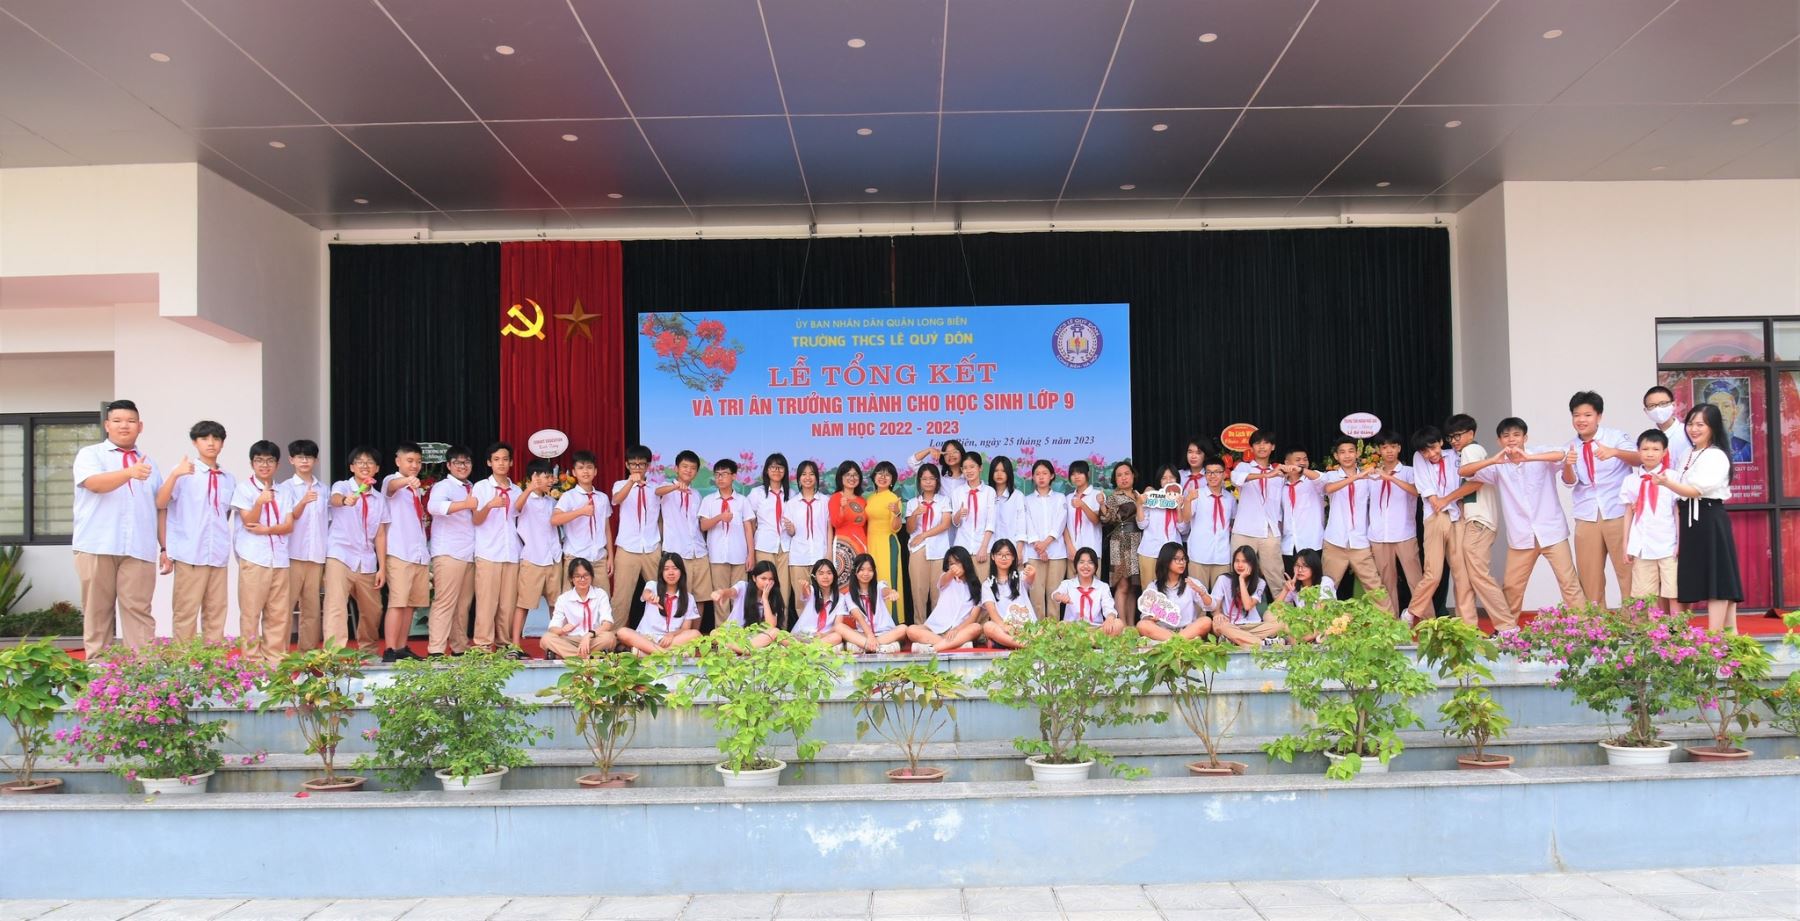 Trường THCS Lê Quý Đôn tổ chức lễ tổng kết năm học 2022-2023